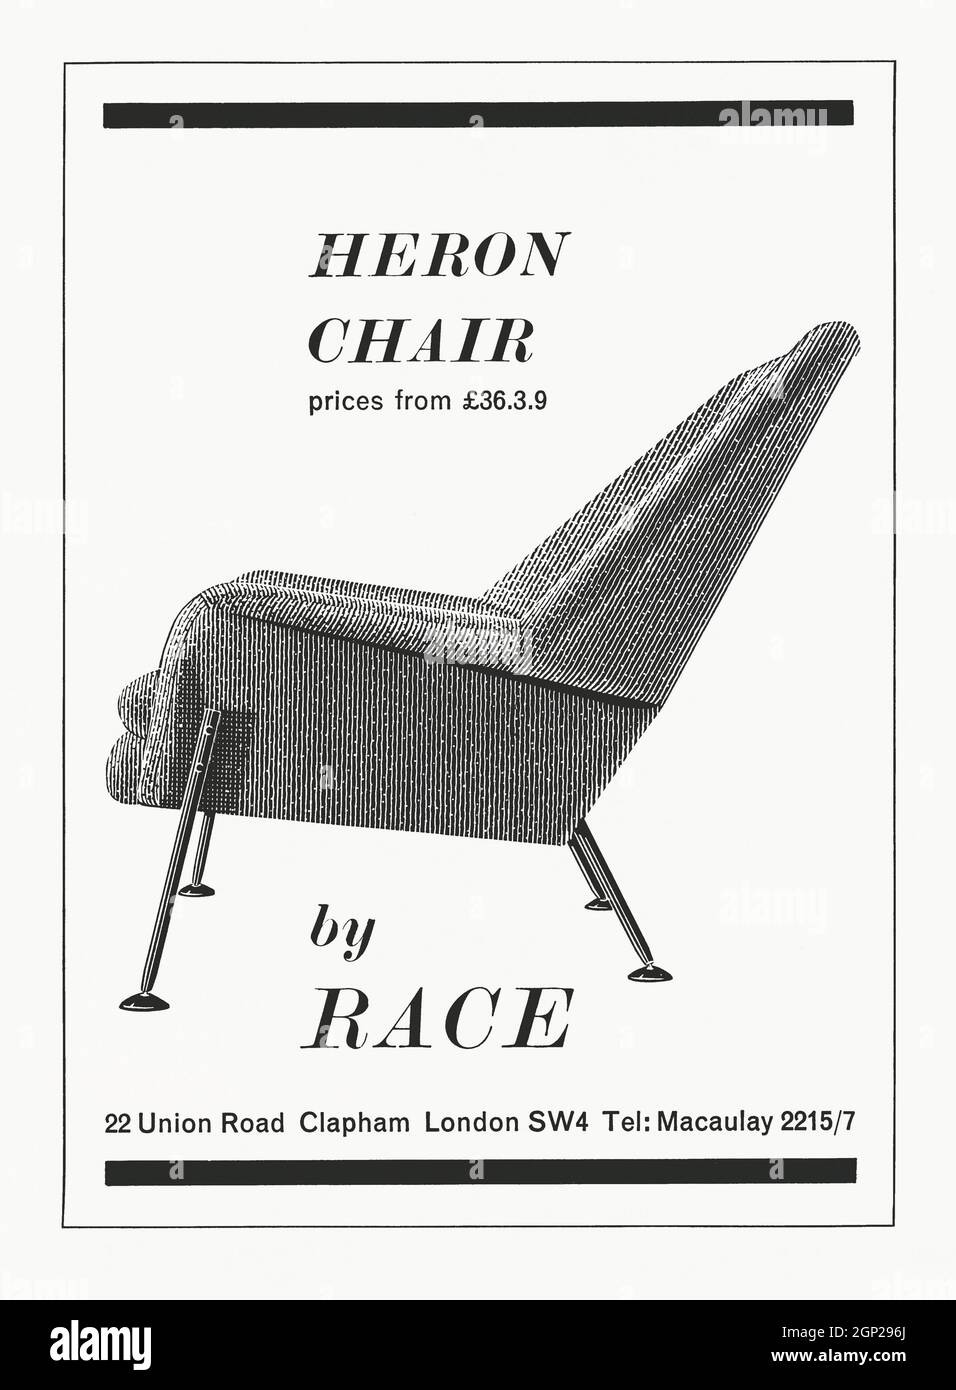 Une publicité des années 1960 pour l'élégante chaise Heron, conçue par Ernest Race. Ernest Race (1913-1964) est un designer anglais de textiles et de meubles, né à Newcastle-upon-Tyne. Ses conceptions les plus connues sont la chaise en aluminium BA3 de 1945 et l'Antelope, conçue pour le Festival de Grande-Bretagne en 1951. La course a continué d'étudier de nouveaux matériaux avec les chaises Heron & Flamingo, le Flamingo ayant remporté le prix du Design Center Award en 1959 en raison de son utilisation habile de matériaux modernes. Le Heron se distingue du Flamingo par la position des jambes et l'ajout de coussins amples – vintage graphiques des années 1960. Banque D'Images